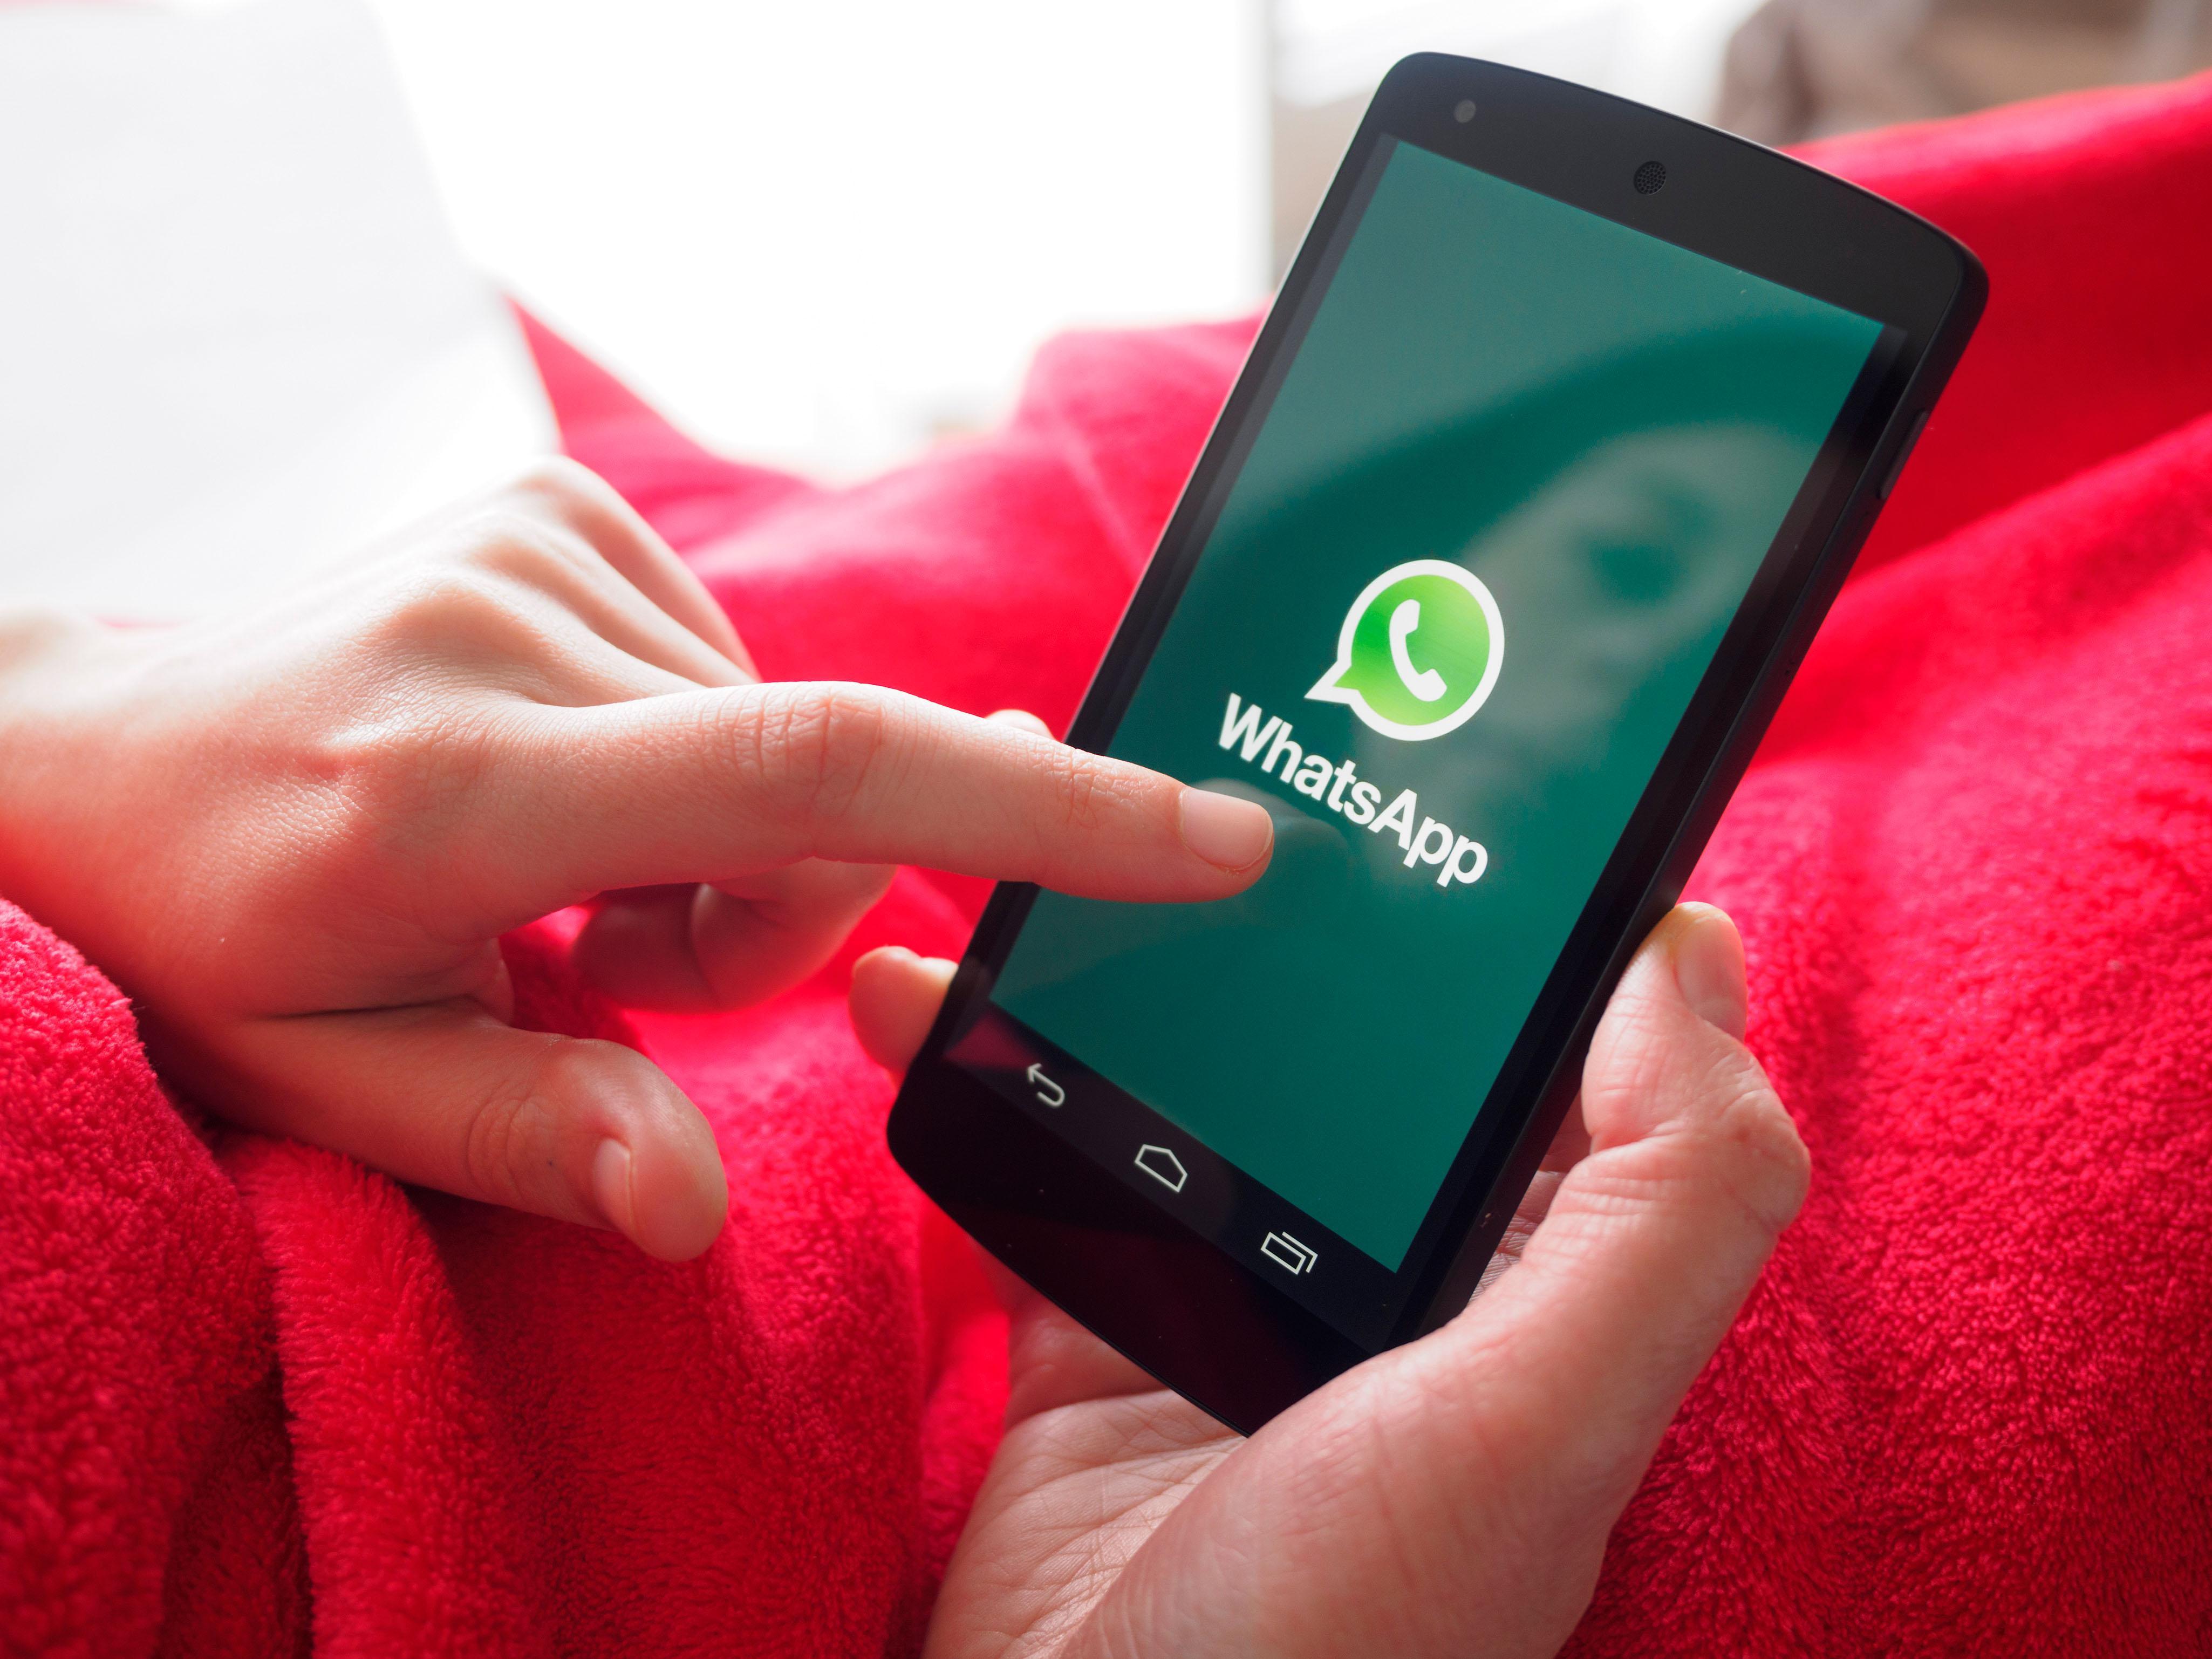   WhatsApp - самое популярное в мире приложение для обмена сообщениями